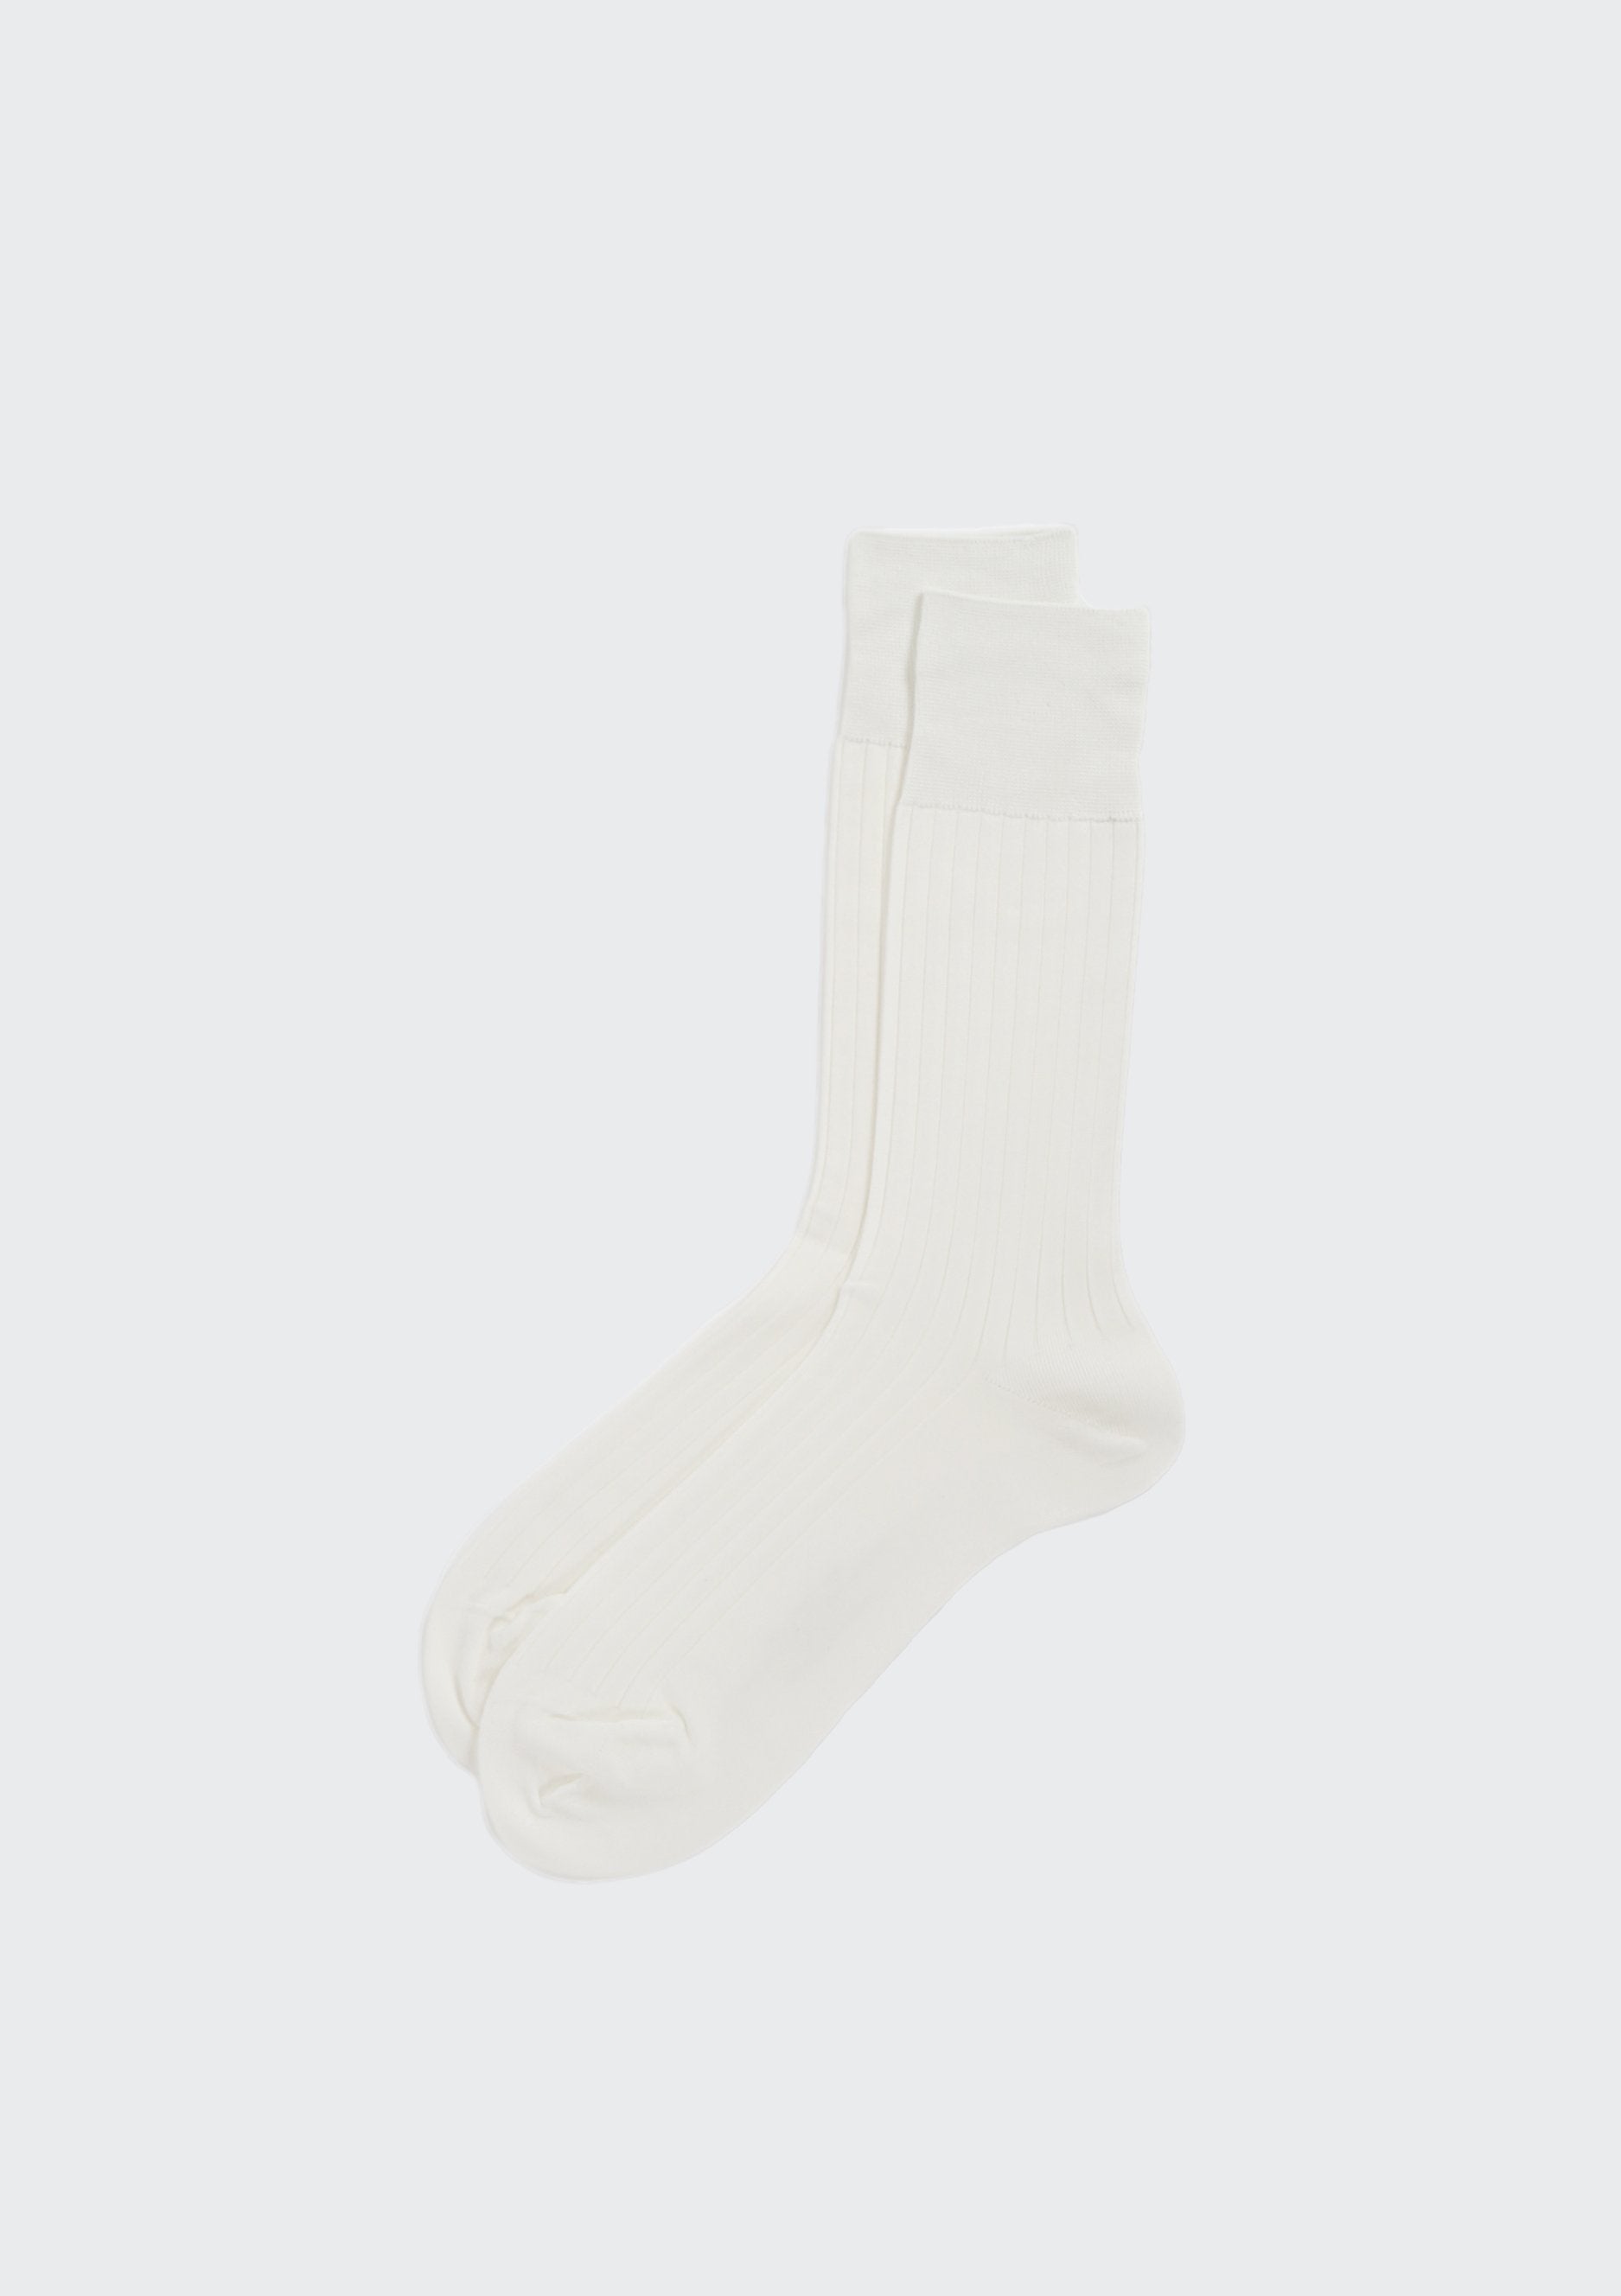 Dress Socks / White